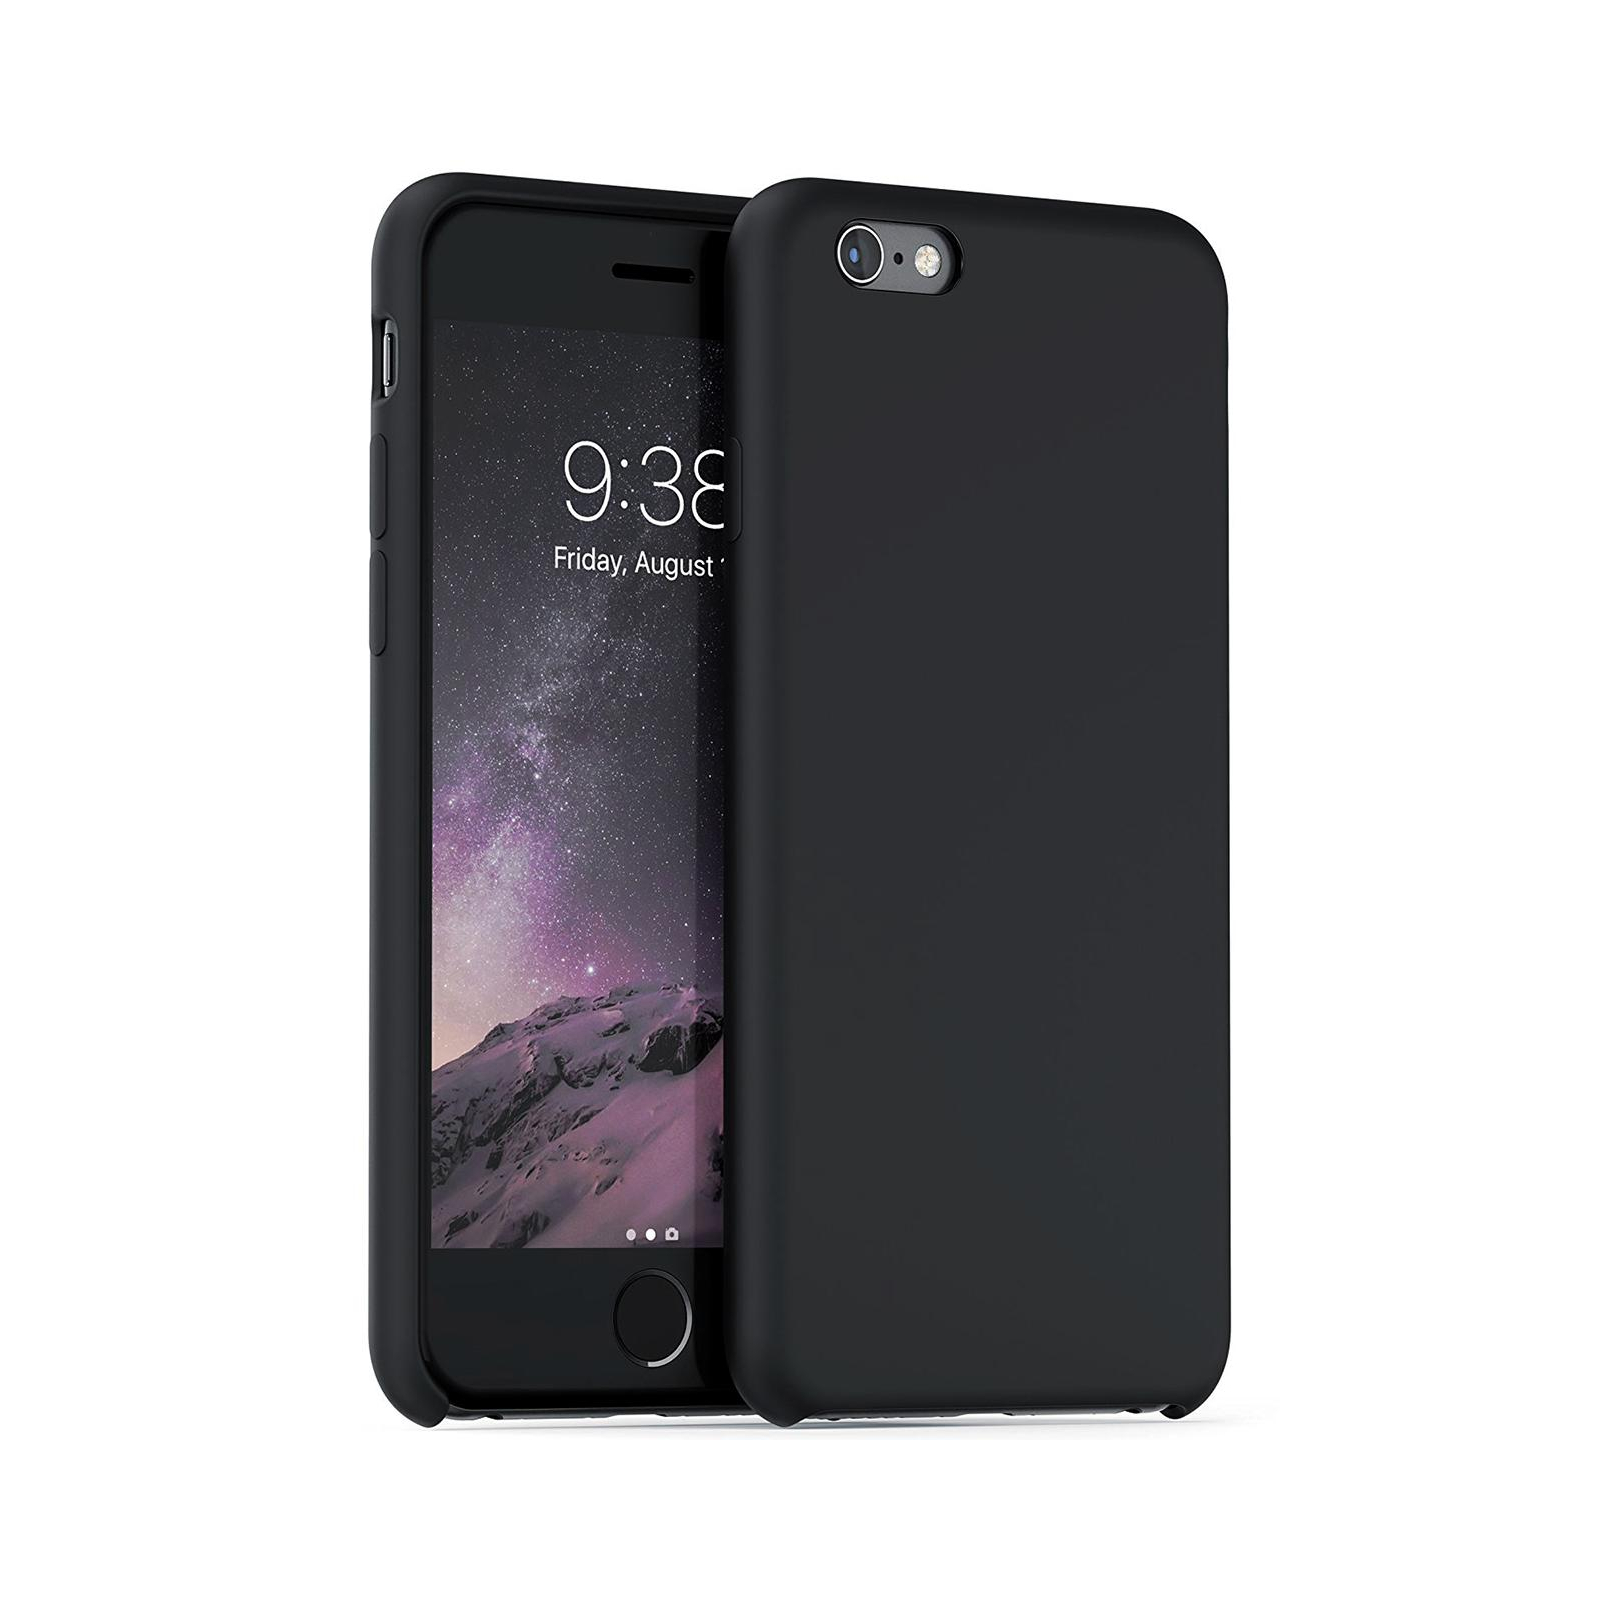 Чохол до мобільного телефона Laudtec для iPhone 6/6s Plus liquid case (black) (LT-I6PLC)